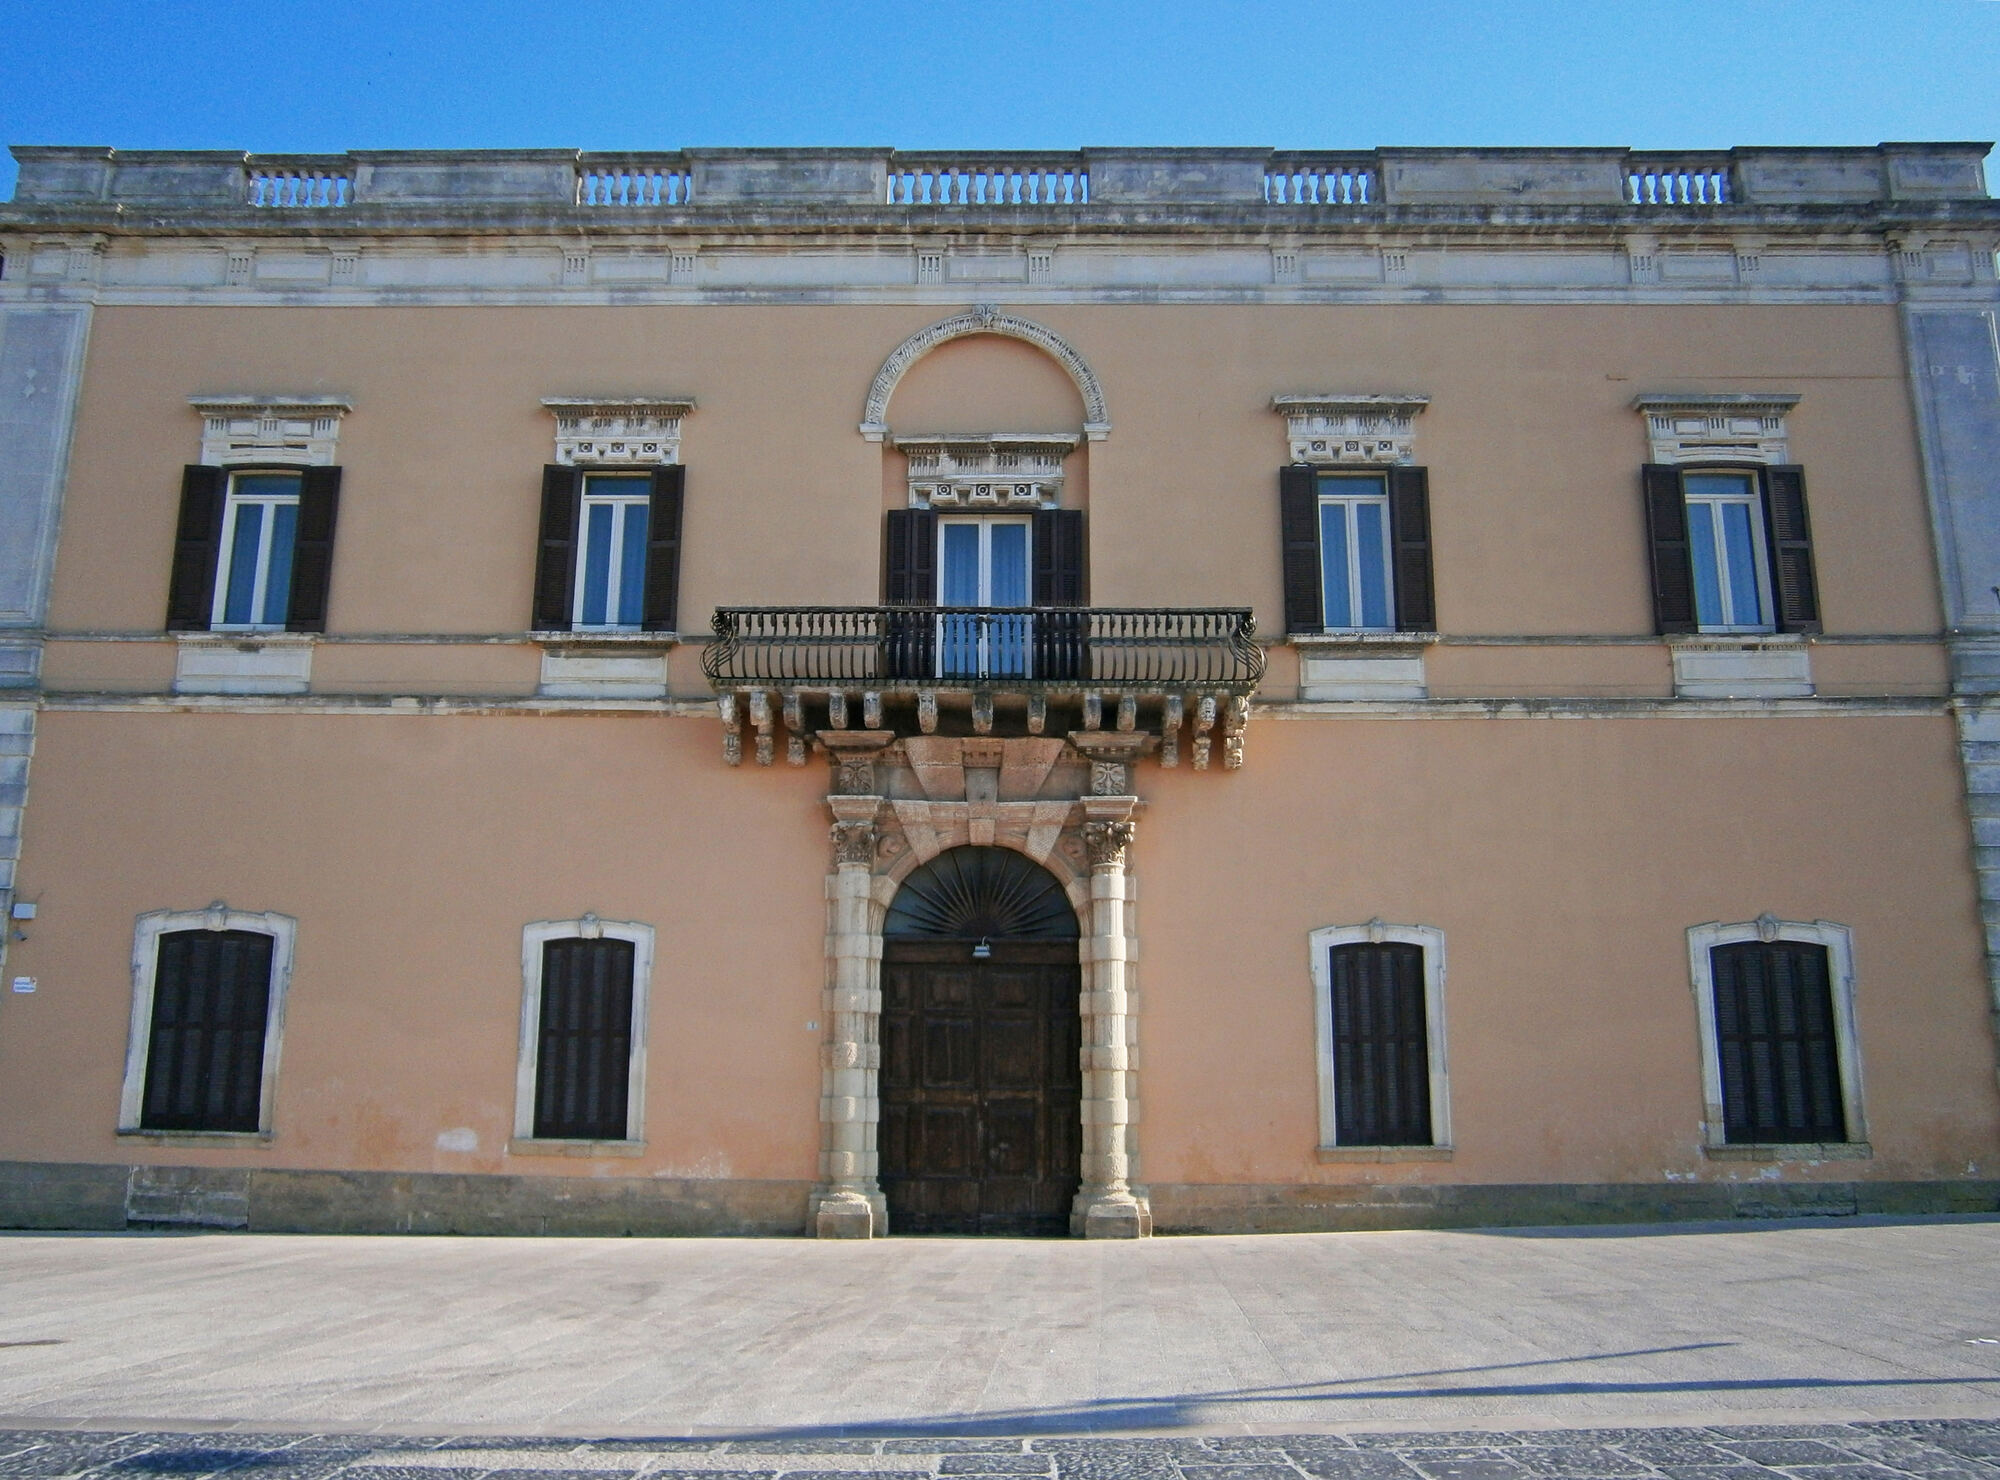 Palazzo Montenegro di Brindisi: testimonianza preziosa di edilizia civile tardo seicentesca con facciata rinascimentale.